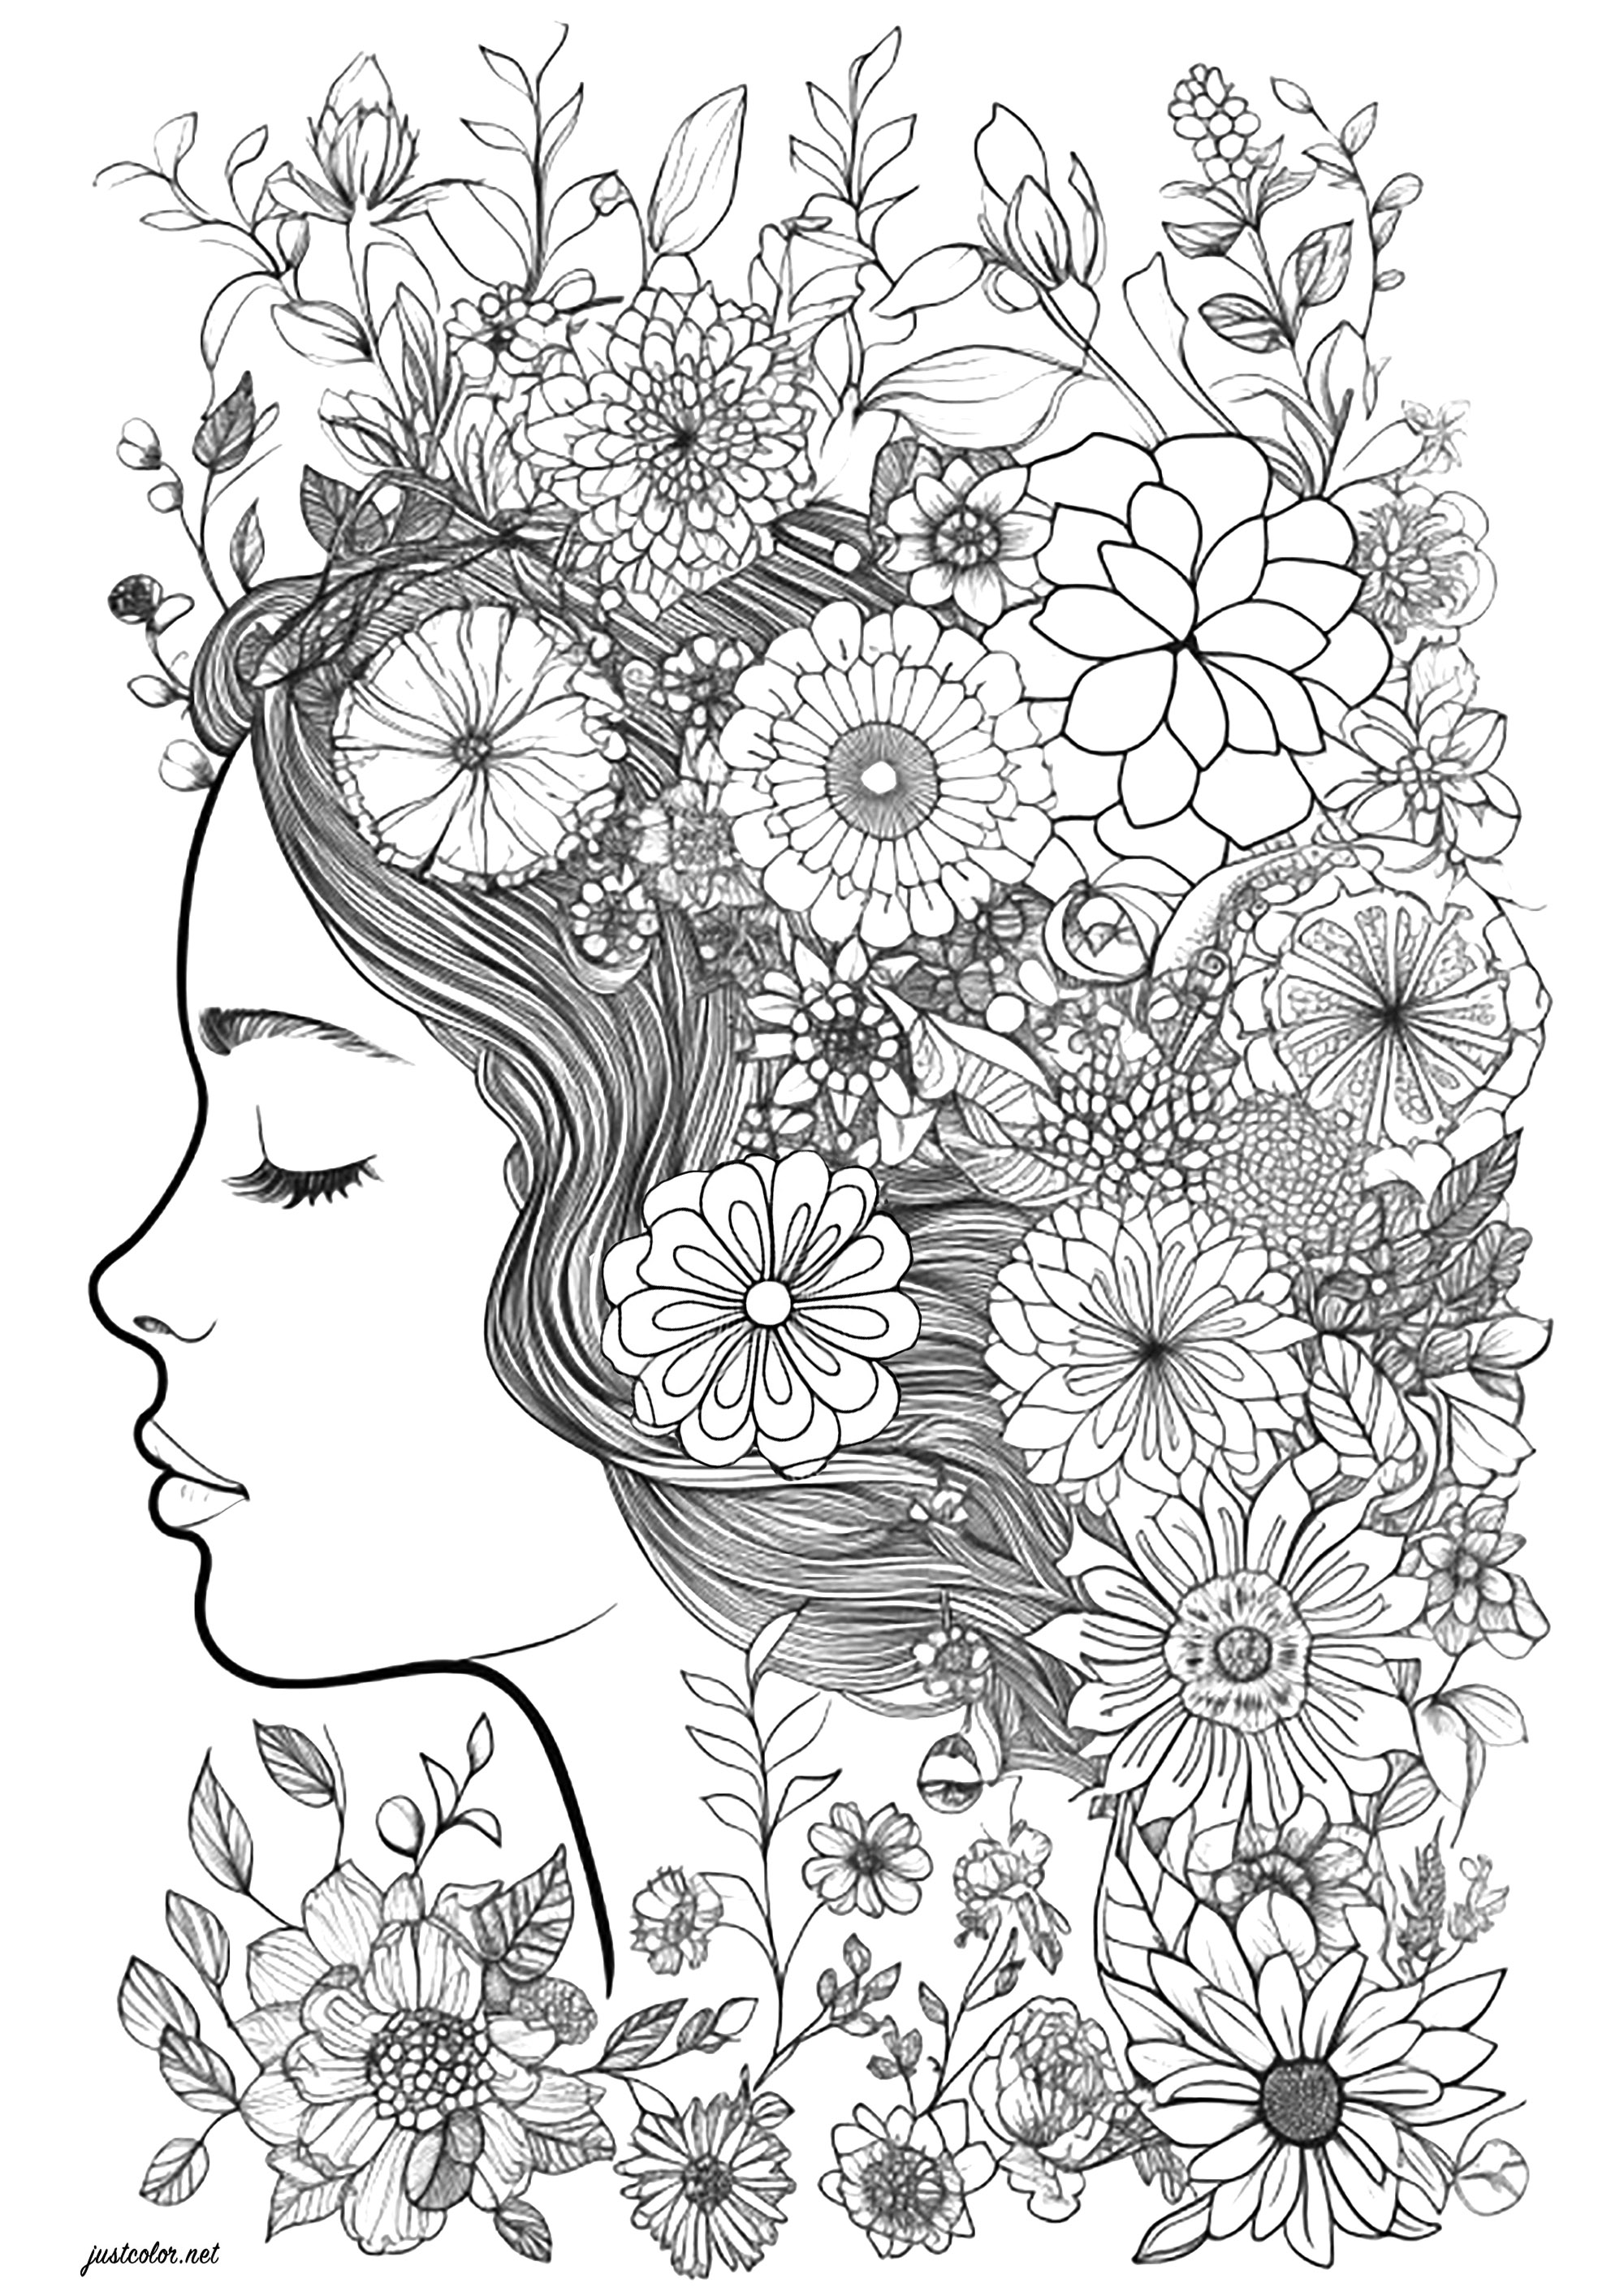 Gesicht einer Frau mit geschlossenen Augen, umgeben von Blumen. Hervorragende Kolorierung eines Frauengesichts im Profil, dessen Haar mit schönen Blumen gefüllt ist